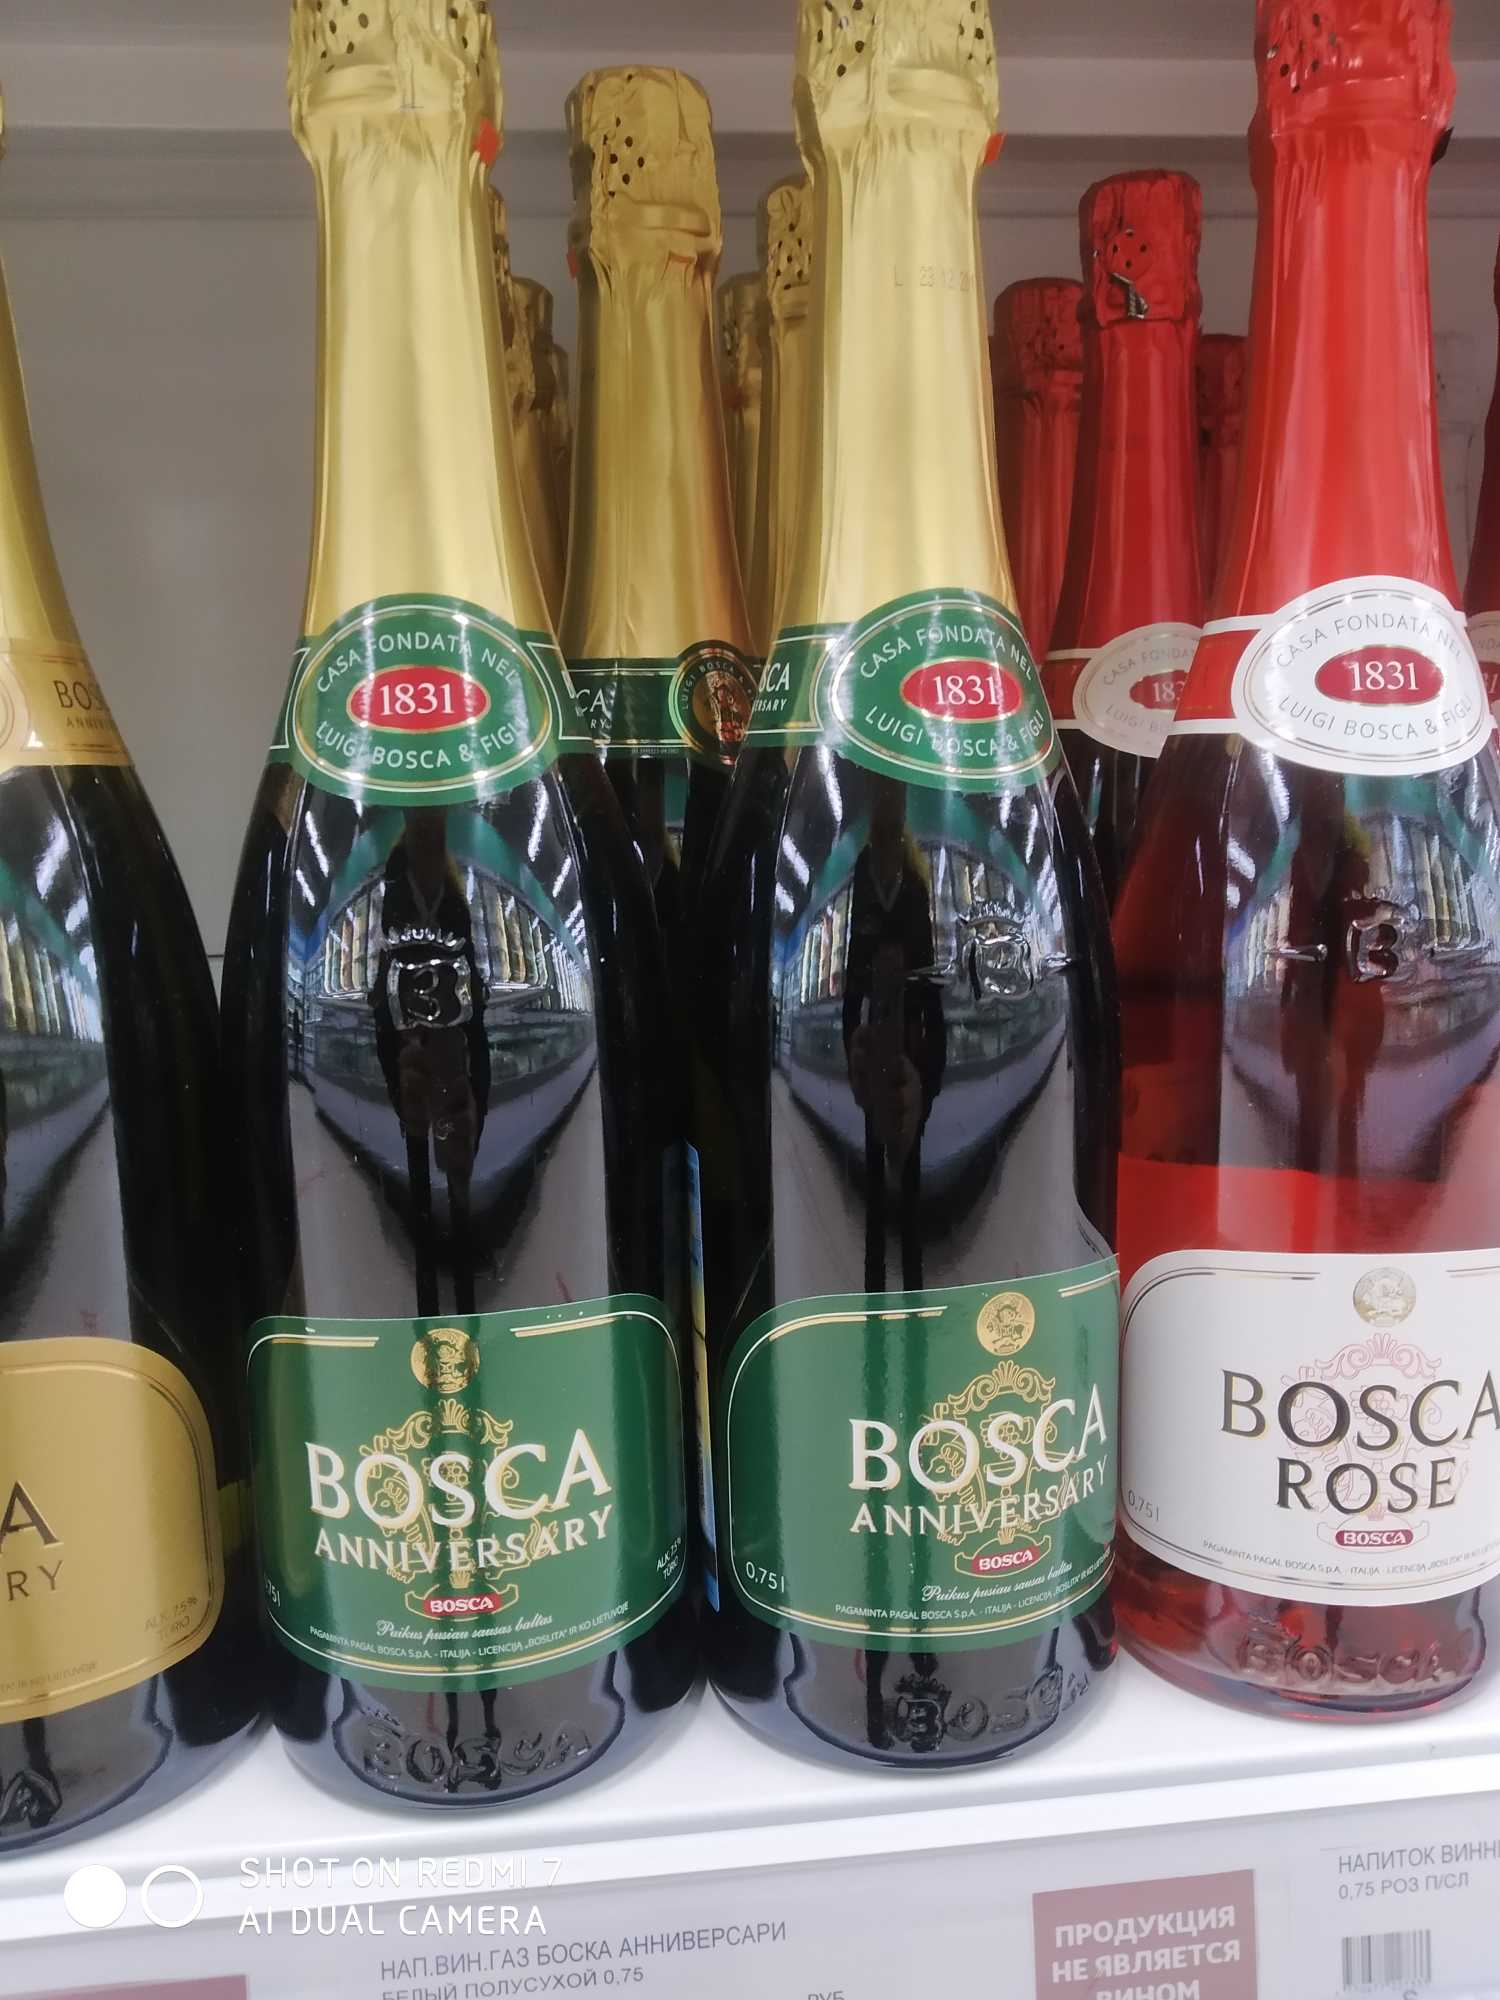 Шампанское боско пятерочка. Винный напиток Bosca Боско. Боско шампанское Анниверсари. Напиток винный Bosca Анниверсари. Винный напиток Bosca Rose 0.75.